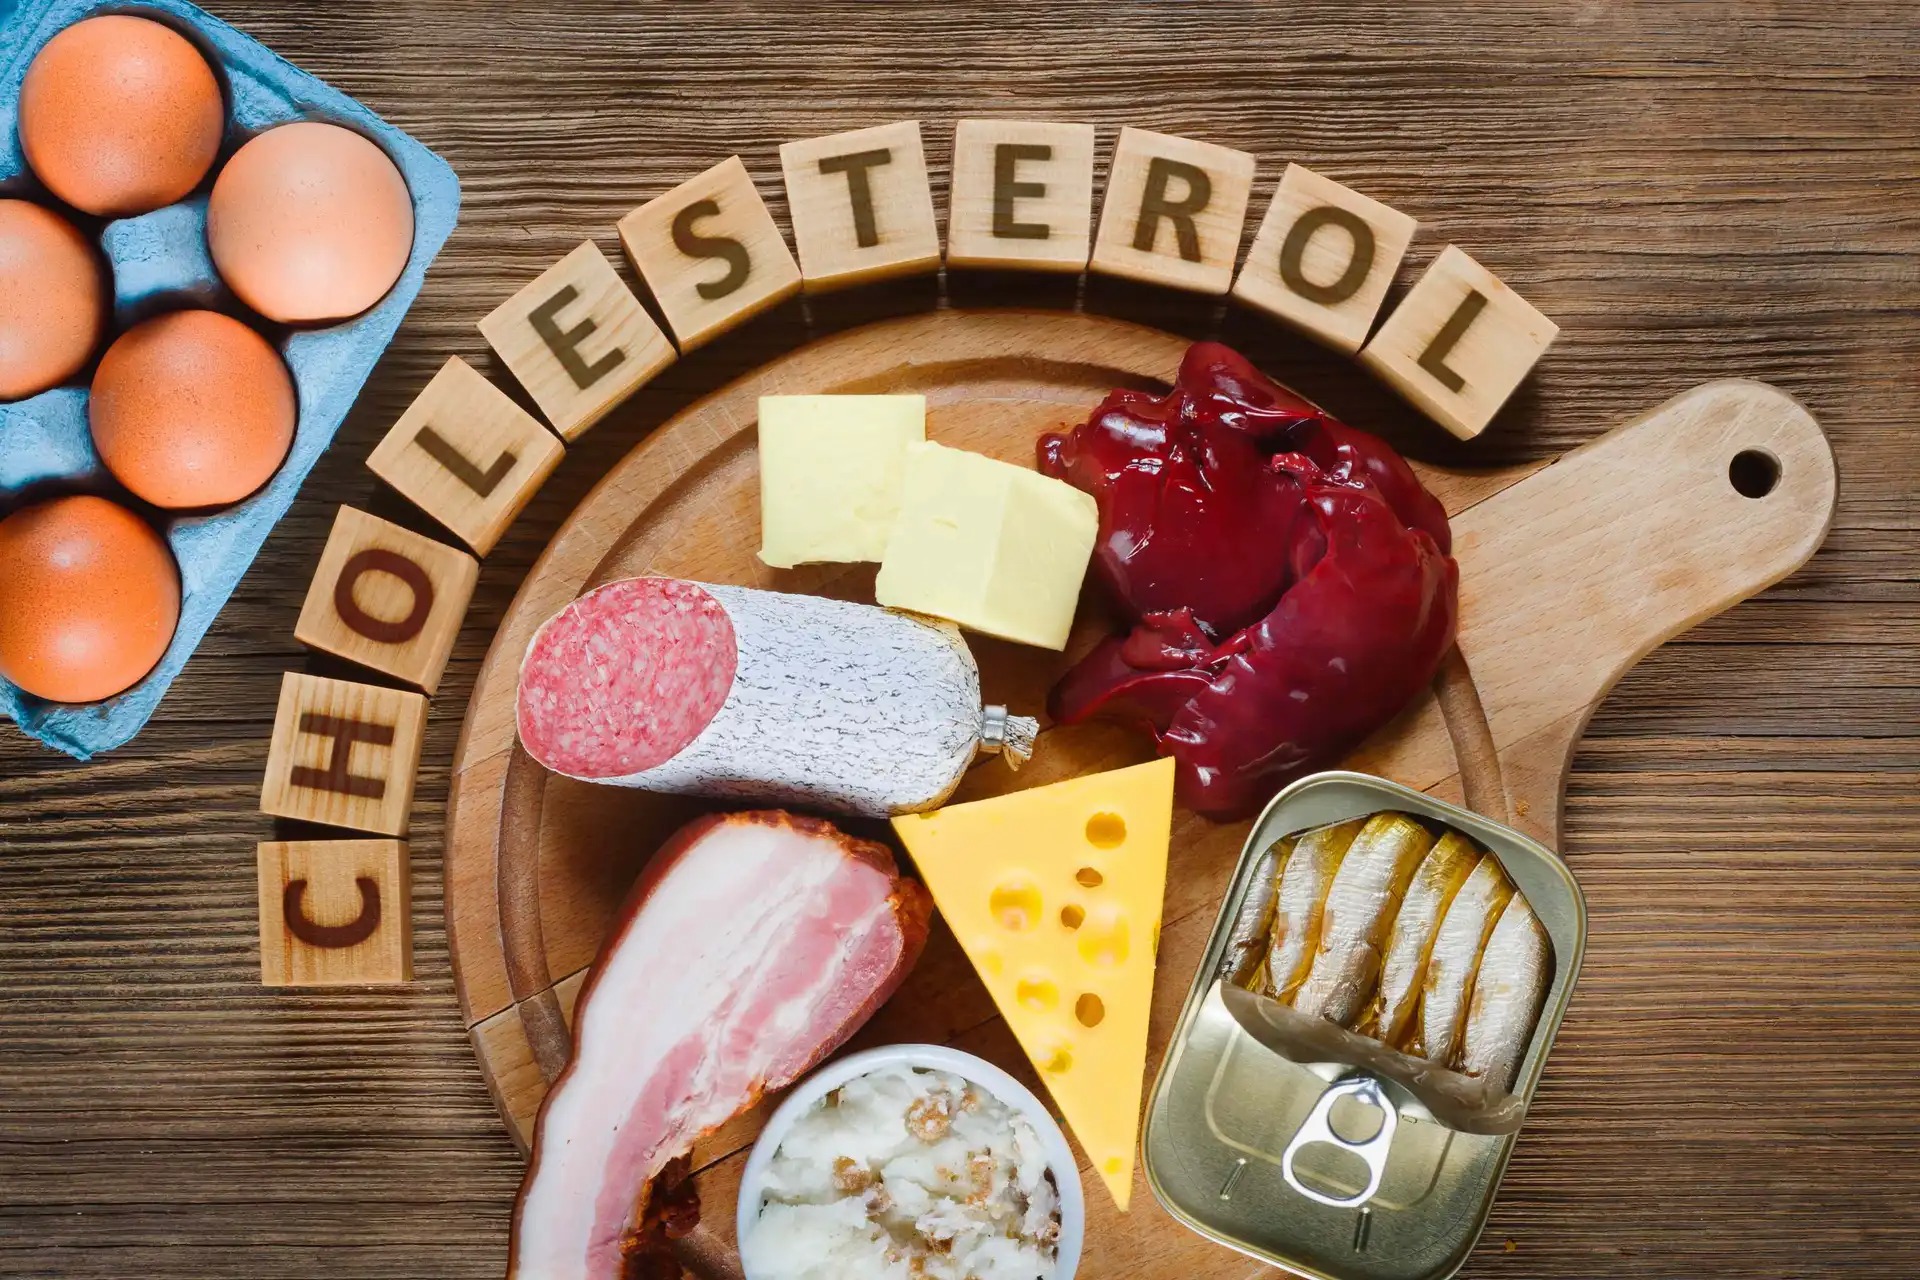 cholesterol - Welche Lebensmittel sind schlecht für den Cholesterinspiegel?